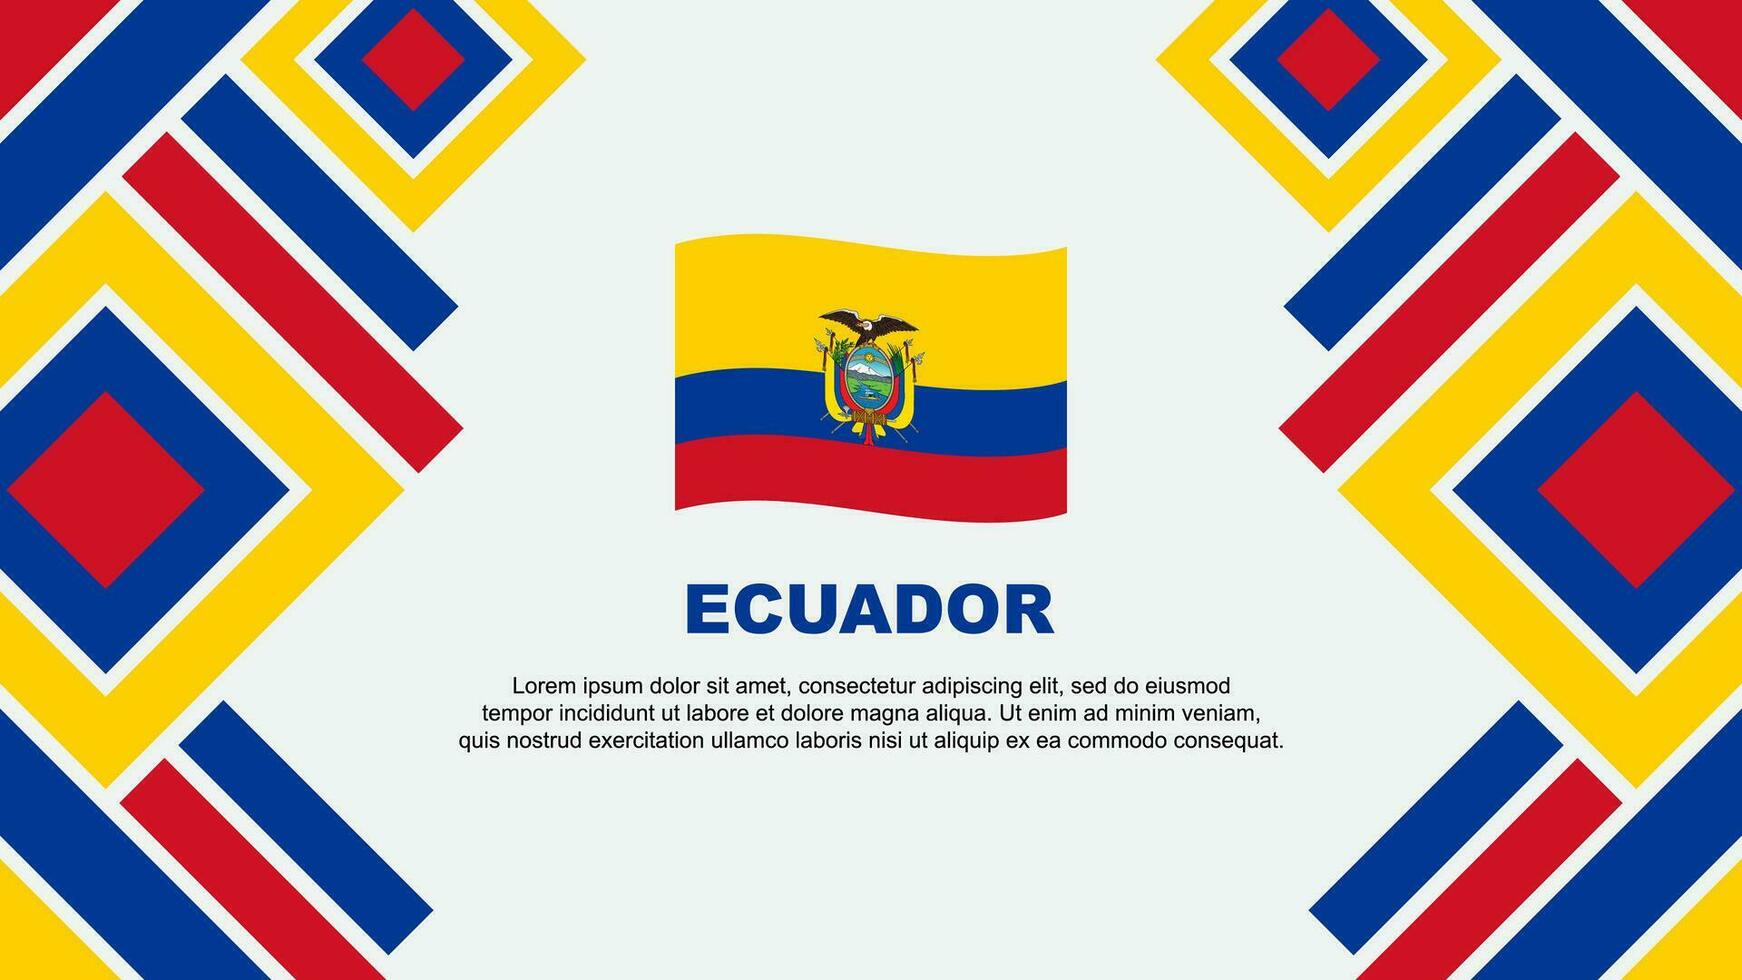 Ecuador Flag Abstract Background Design Template. Ecuador Independence Day Banner Wallpaper Vector Illustration. Ecuador